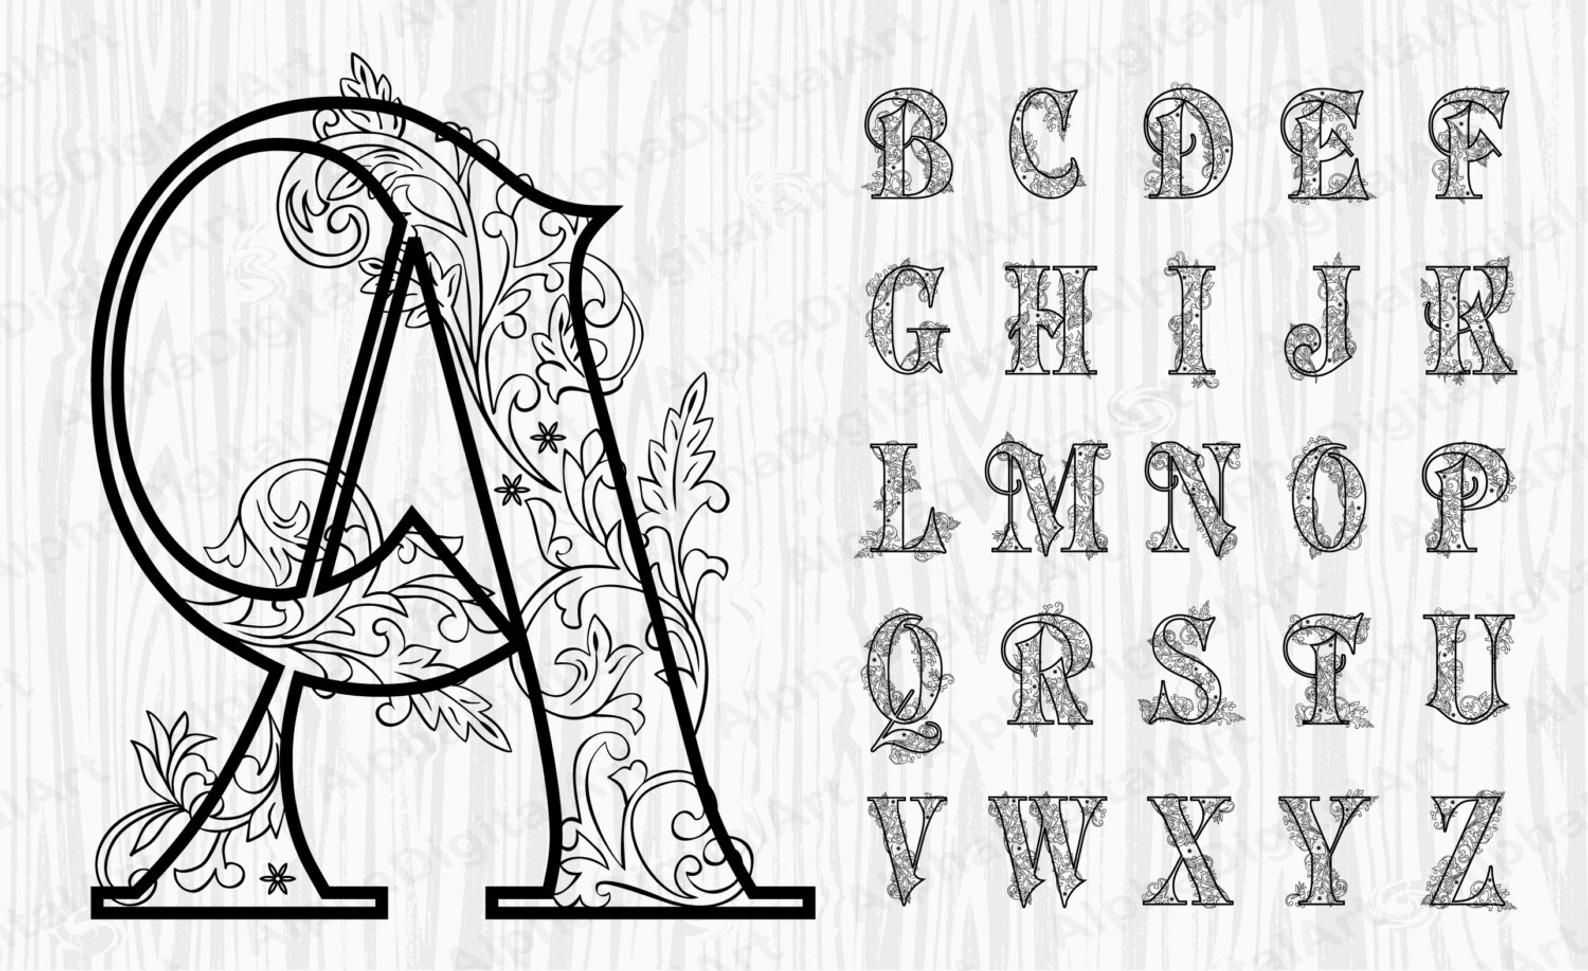 Как красиво написать букву печатную. Красивые буквы. Красивые буквы для плаката. Стилизованные буквы русского алфавита. Буквы в разных стилях.